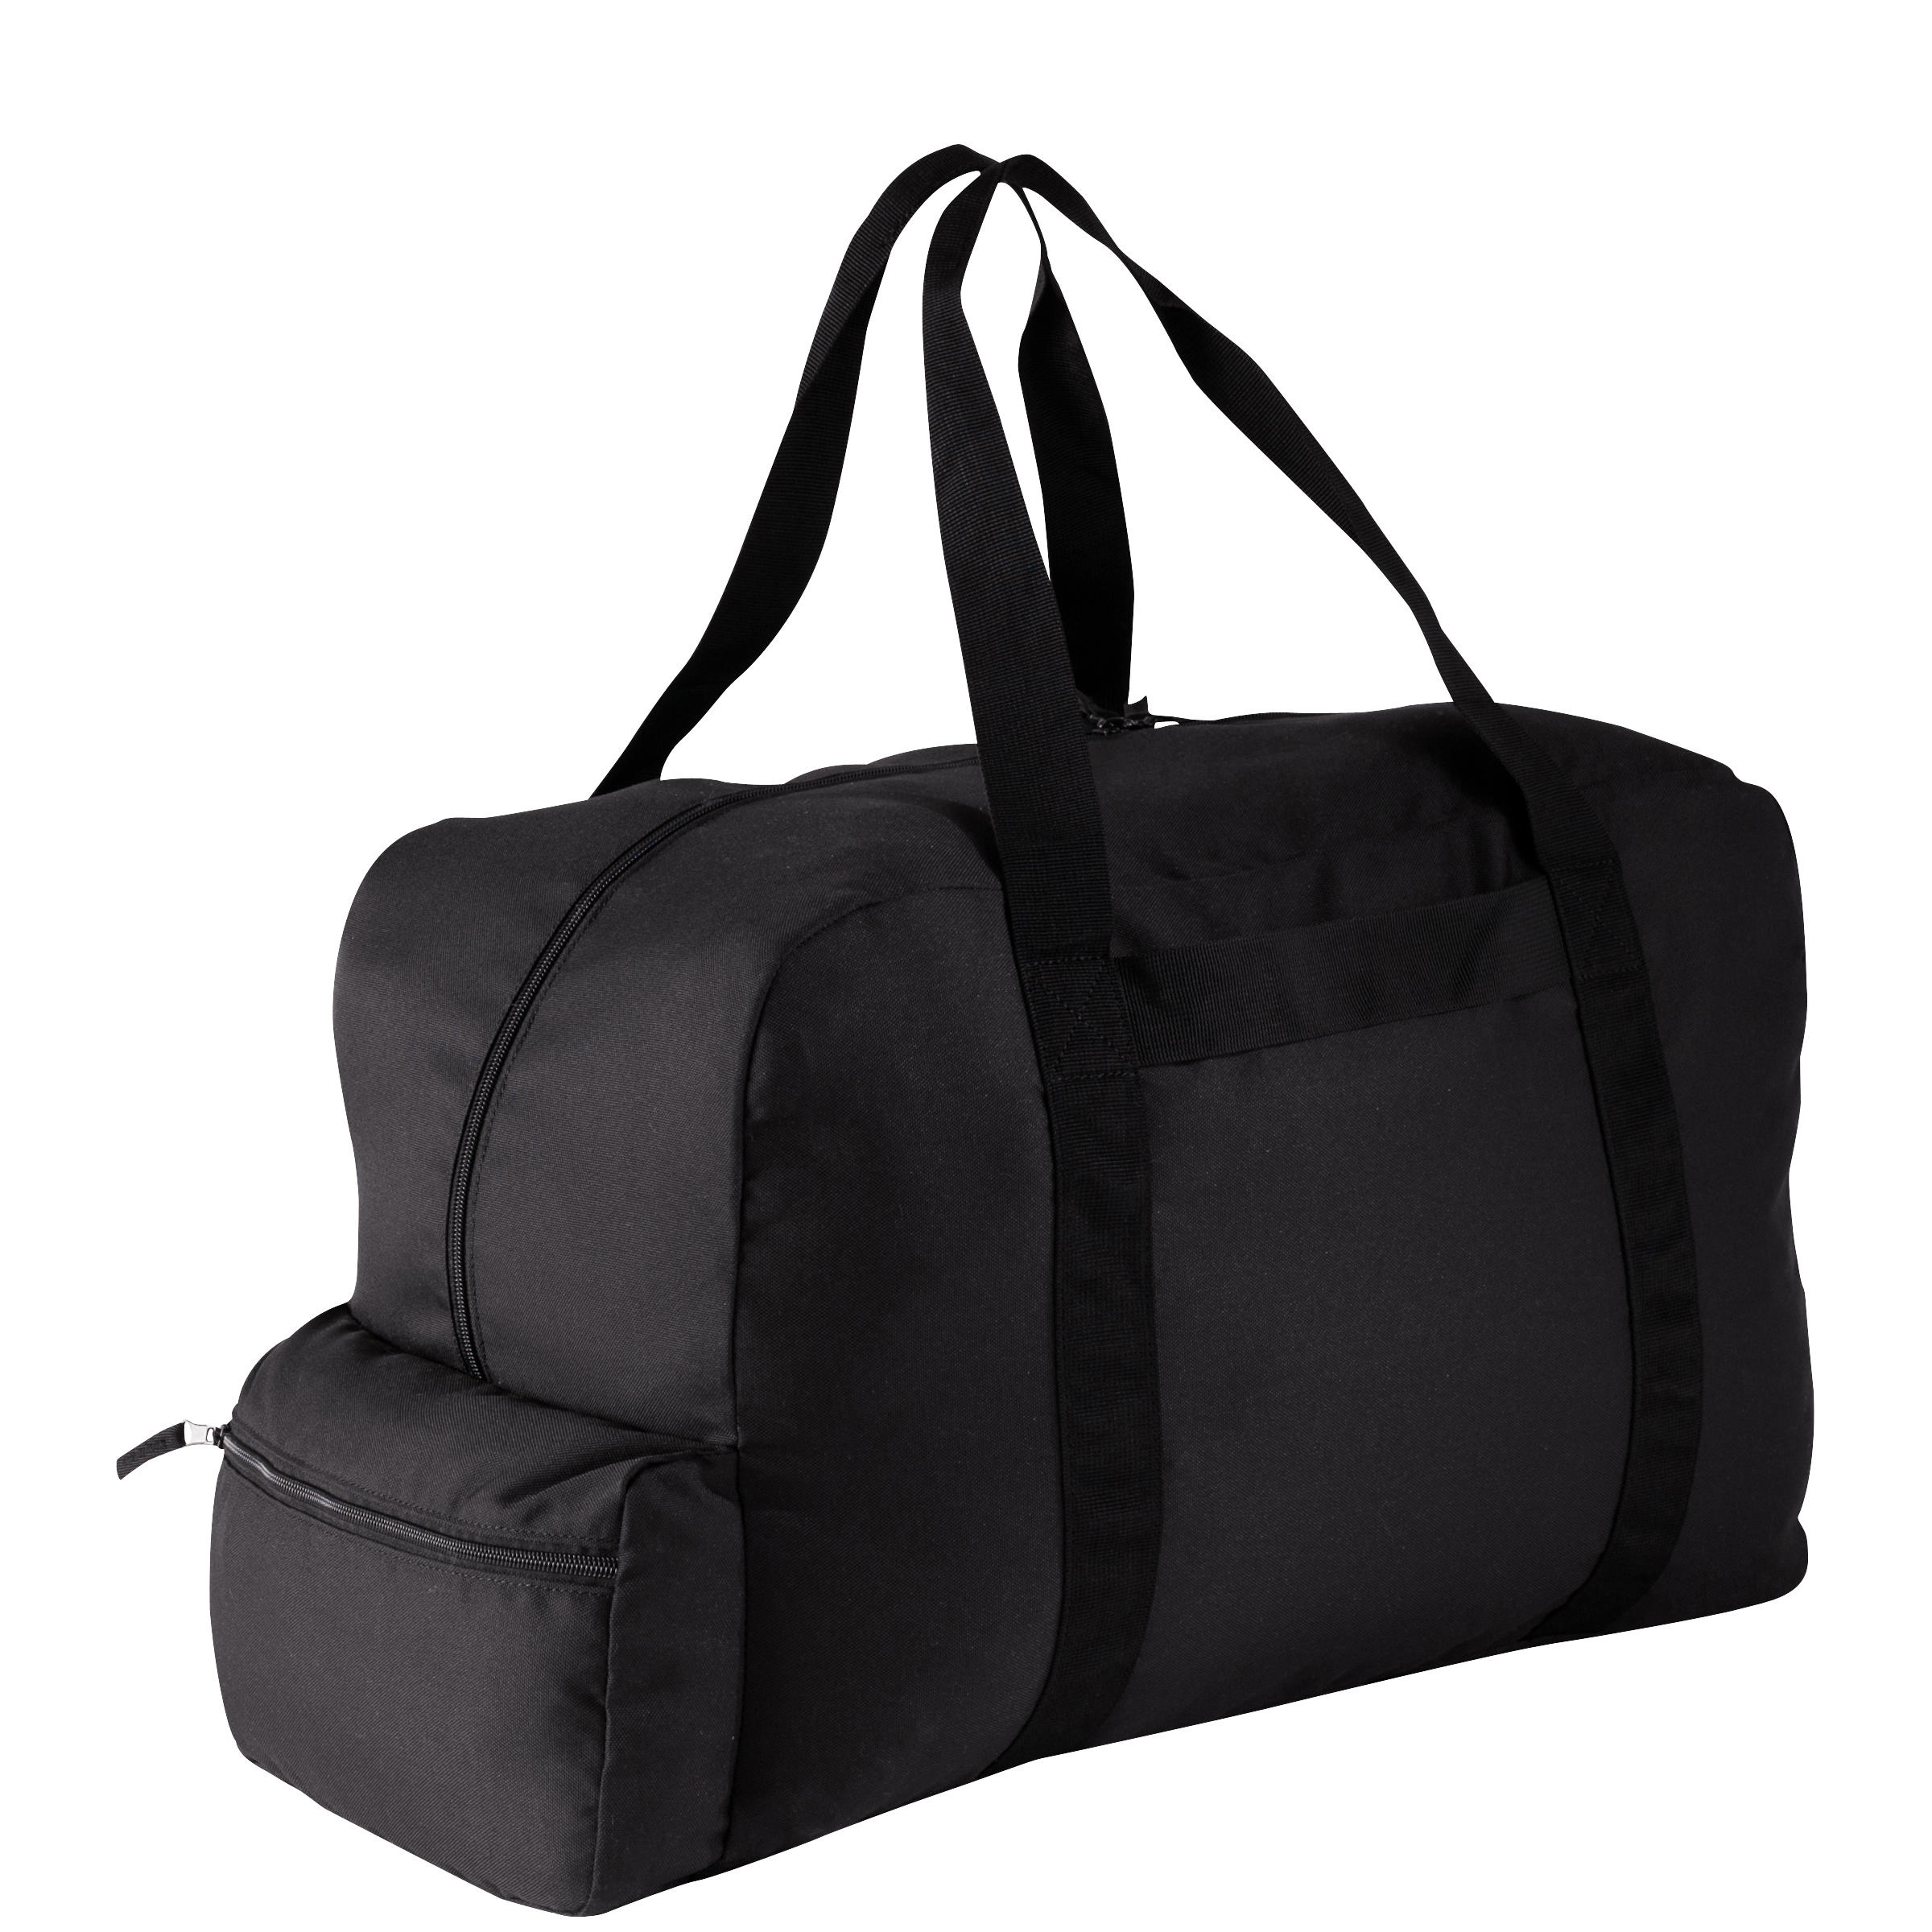 Buy Foldable Waterproof Backpack 20L Travel Black Online  Decathlon